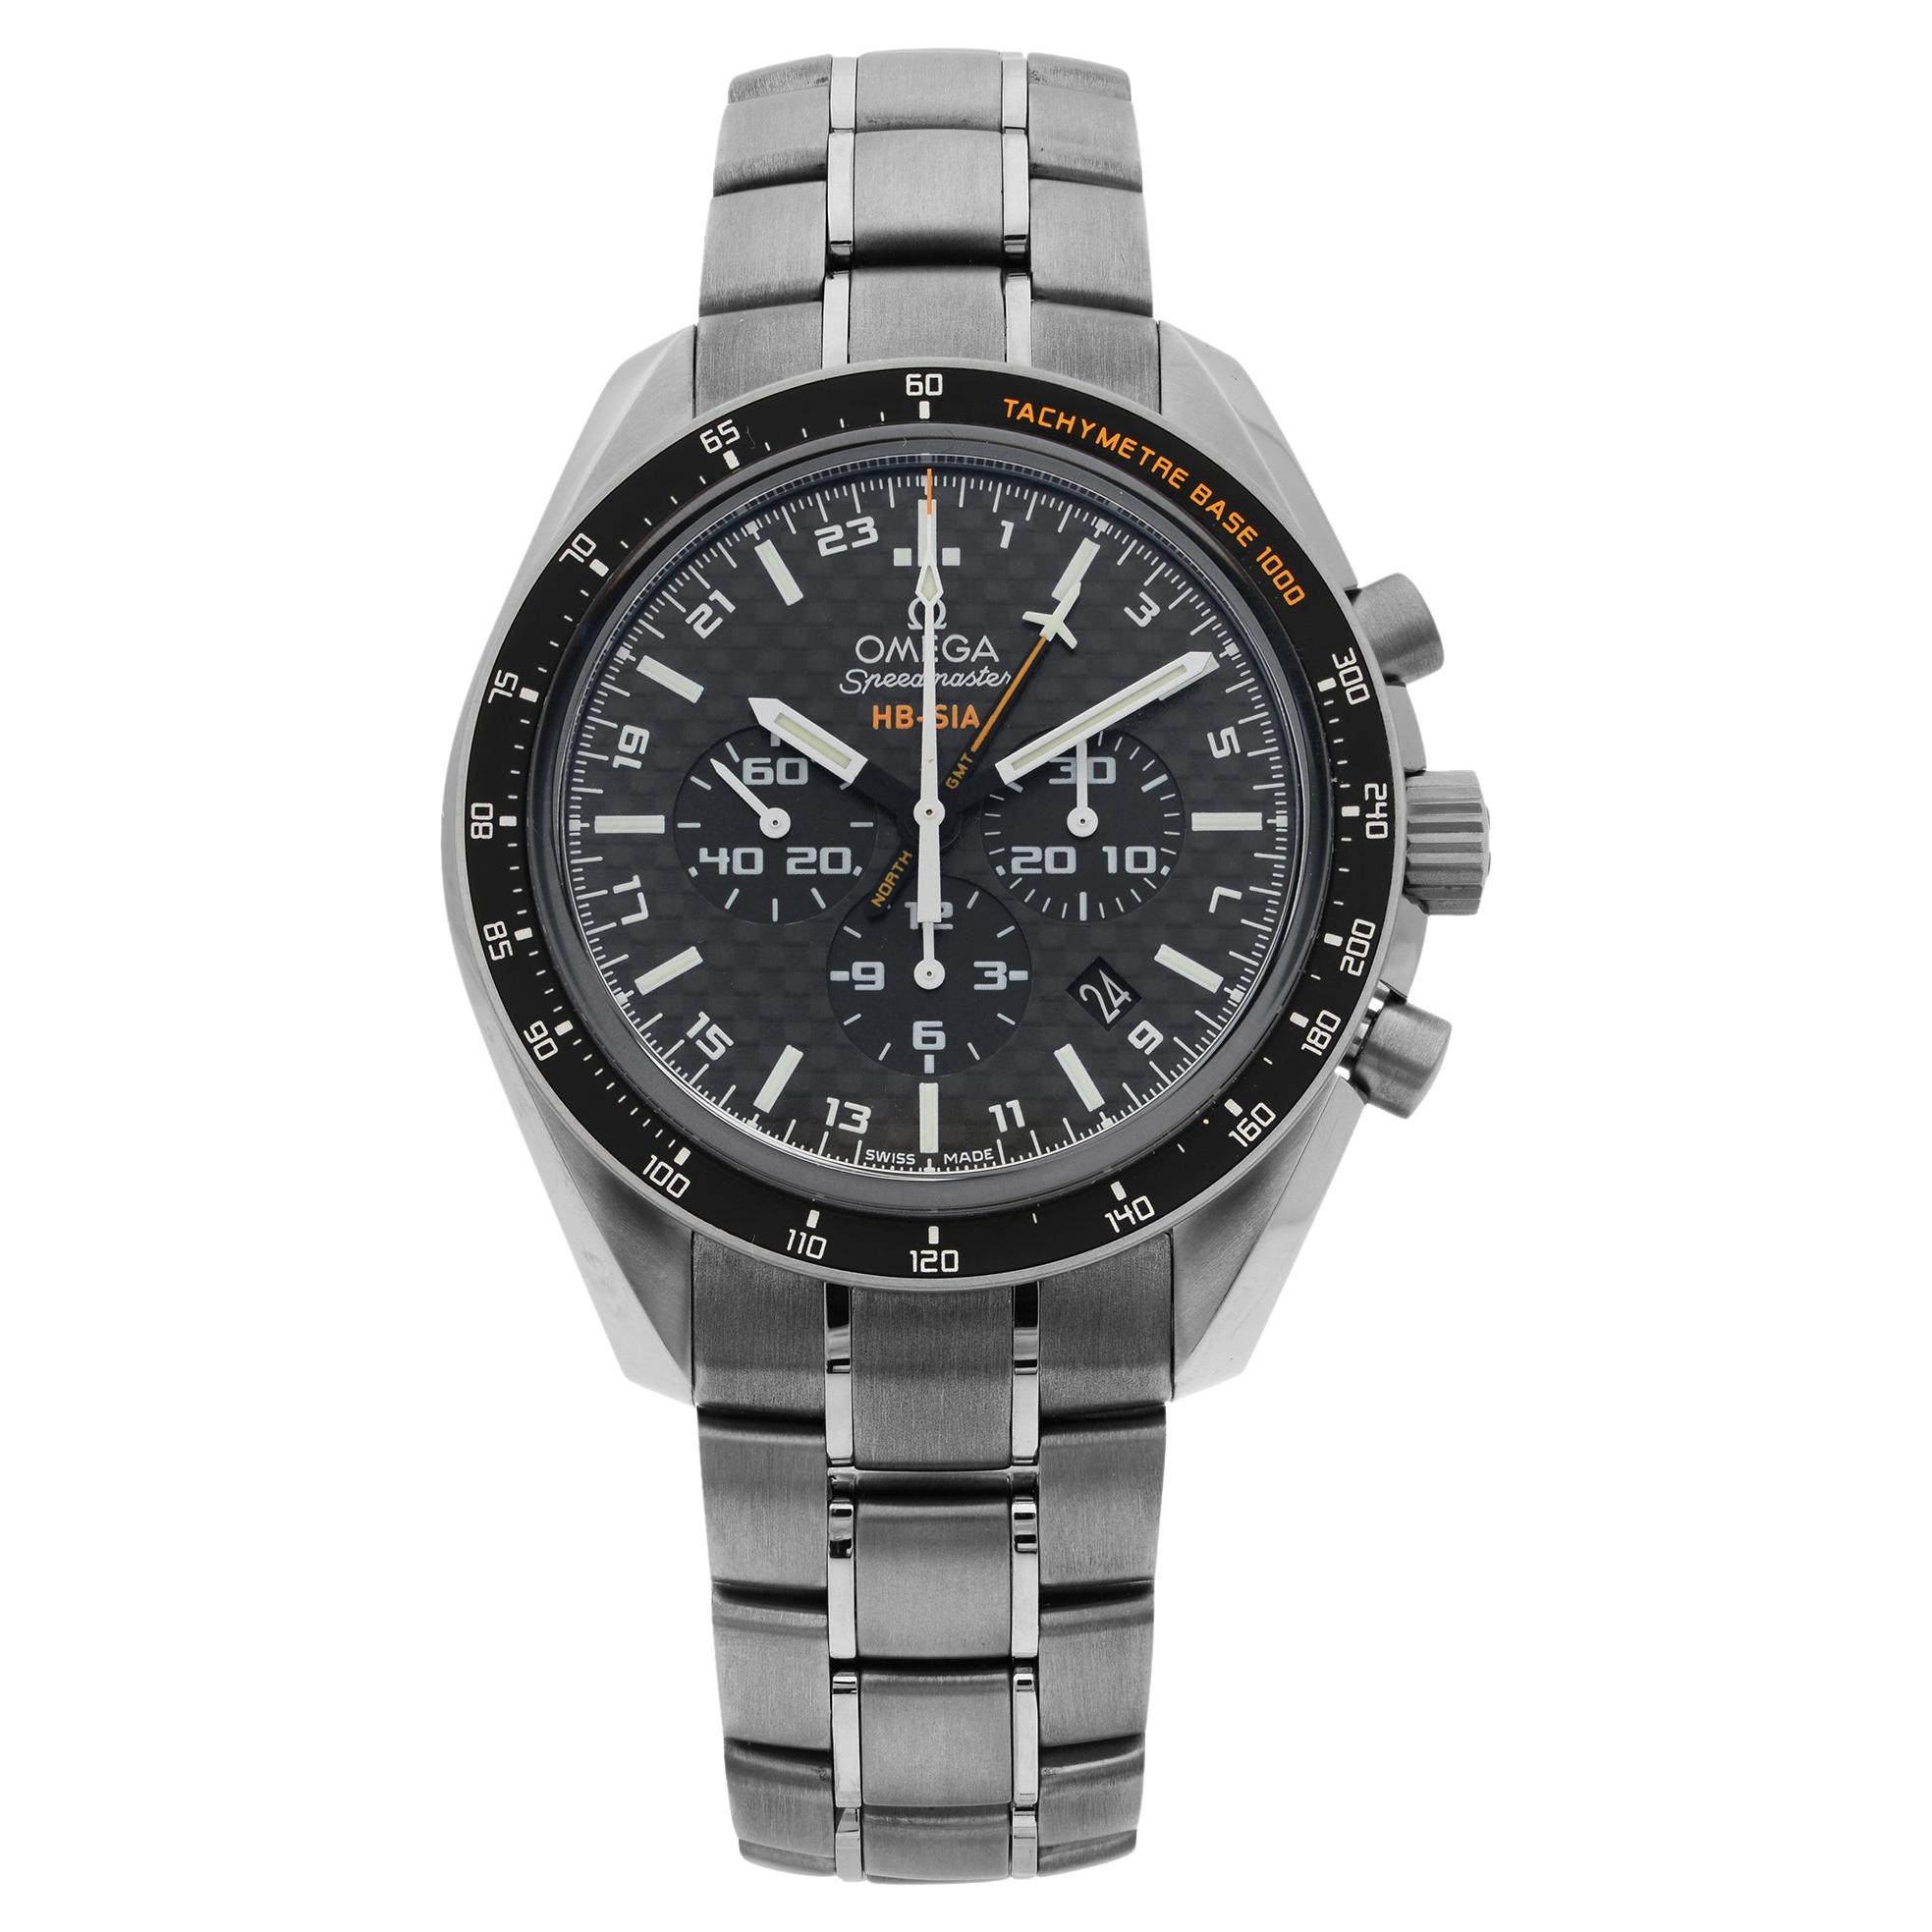 Omega Speedmaster HB-SIA GMT Titanium Black Dial Mens Watch 321.90.44.52.01.001